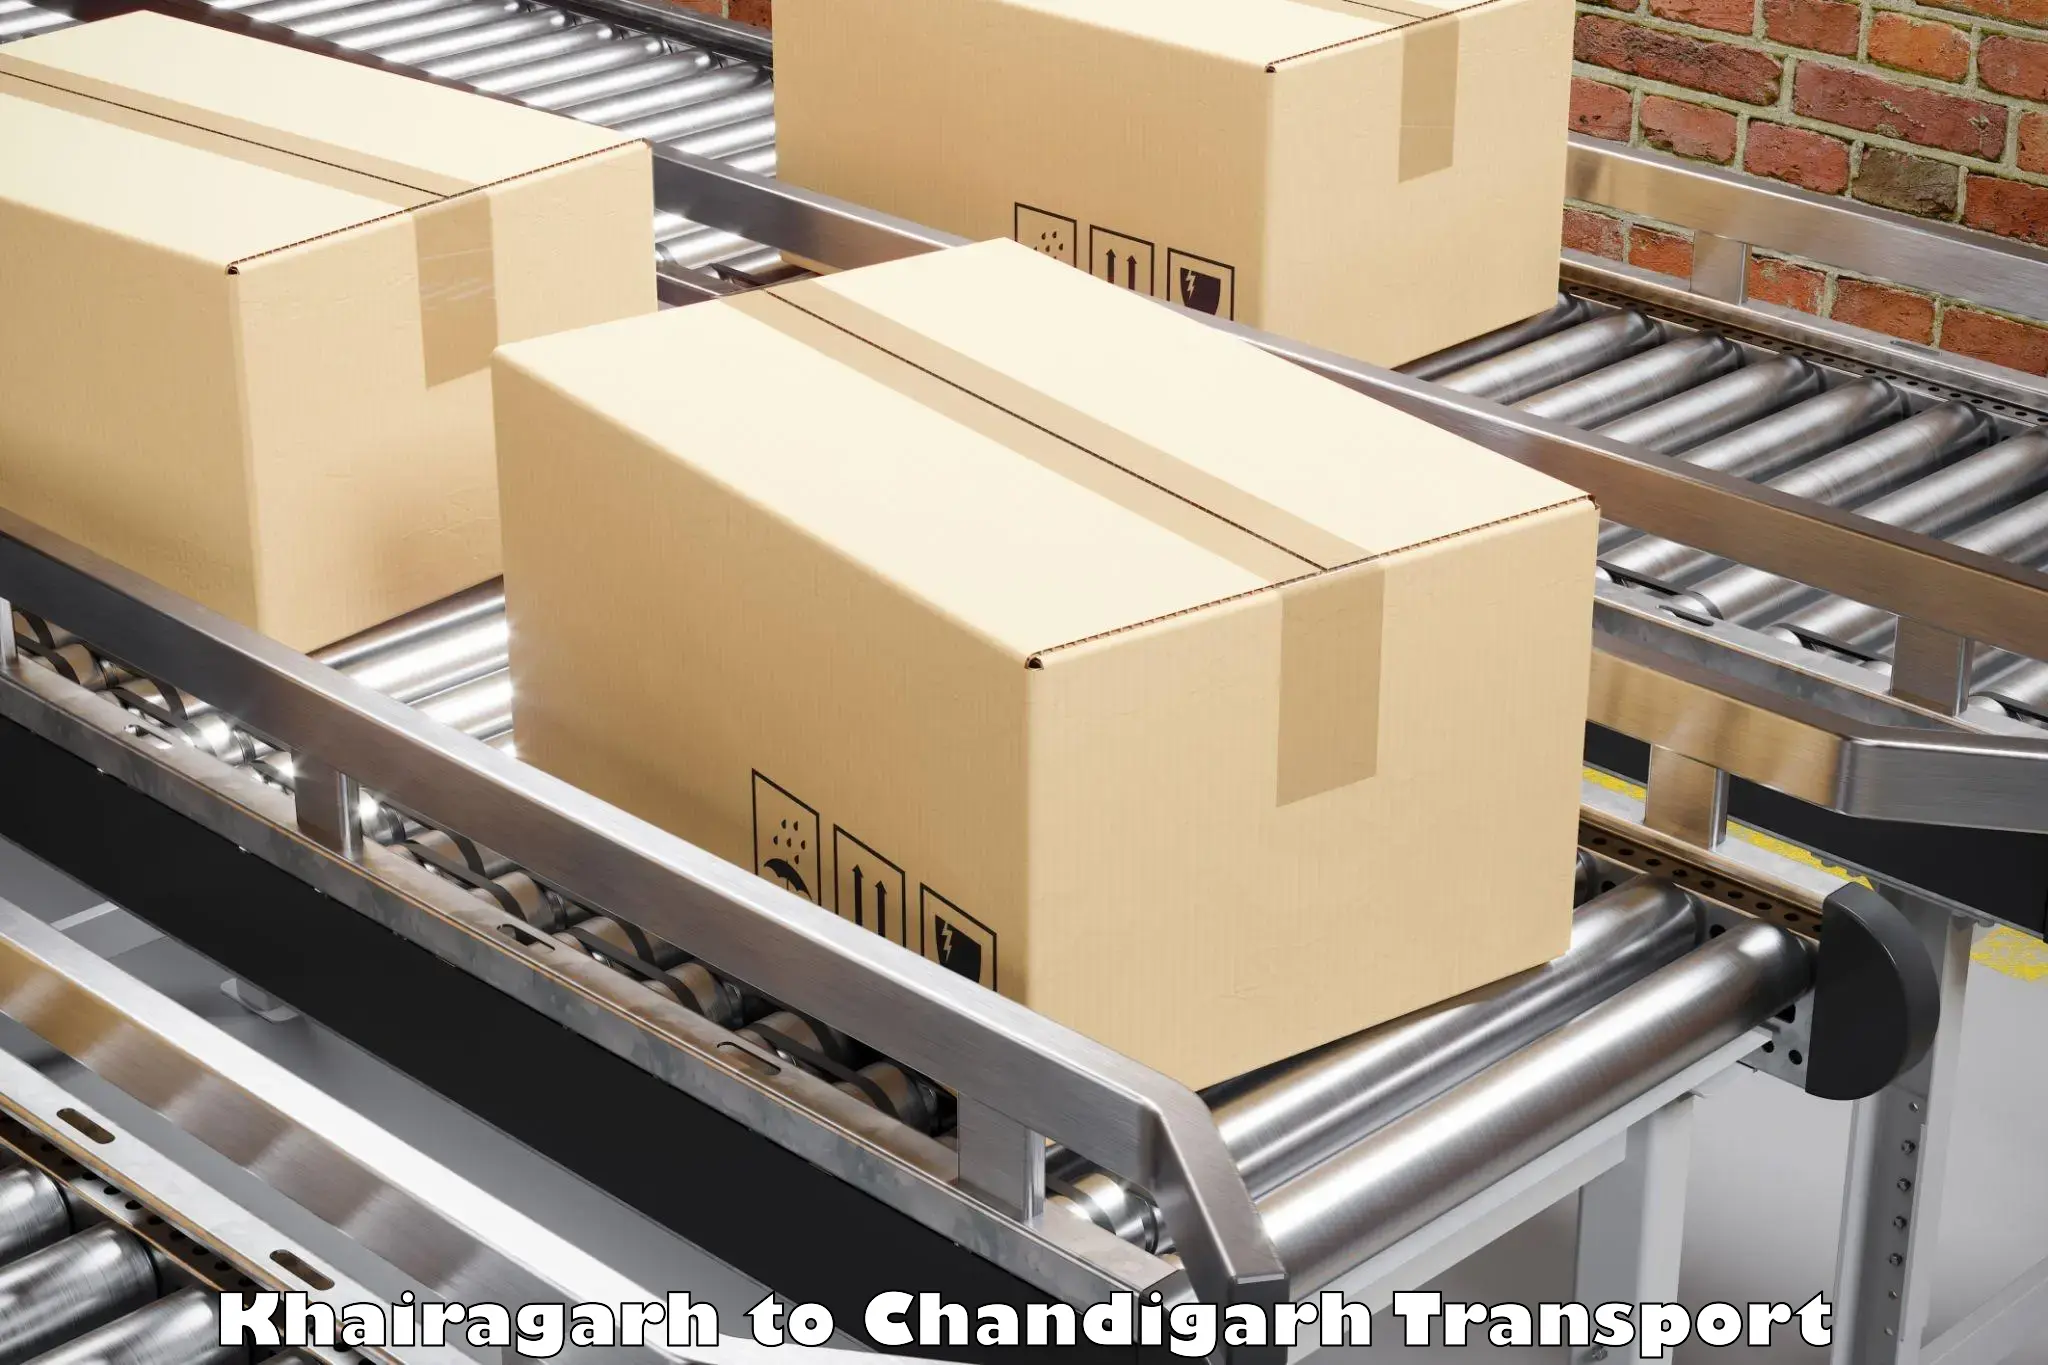 Online transport service Khairagarh to Chandigarh